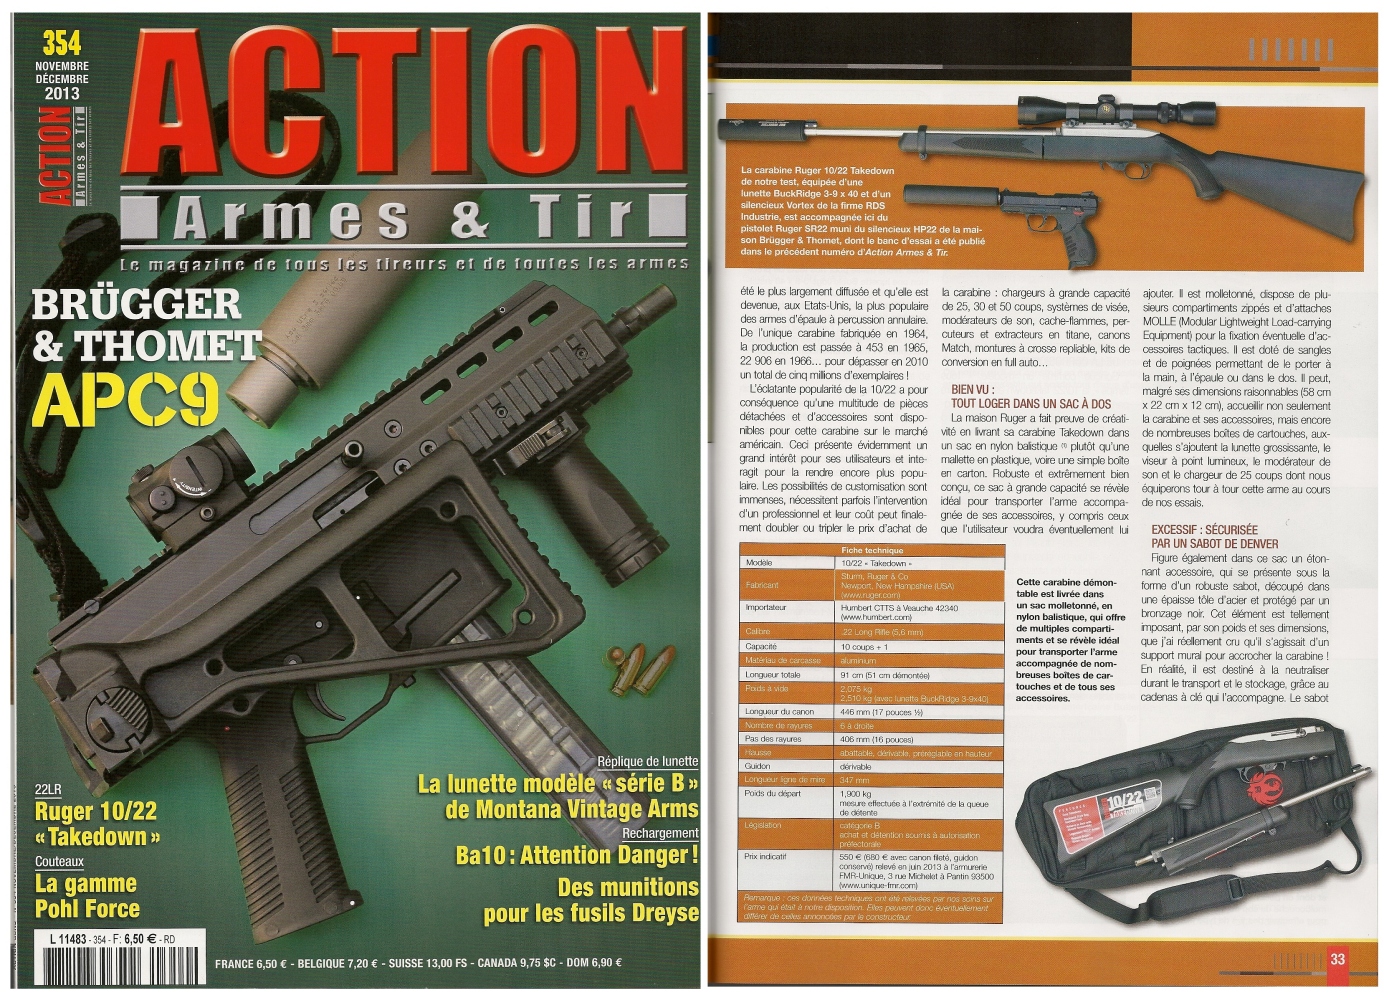 Le banc d’essai de la carabine Ruger 10/22 « Takedown » a été publié sur 7 pages dans le magazine Action Armes & Tir n°354 (novembre-décembre 2013) 